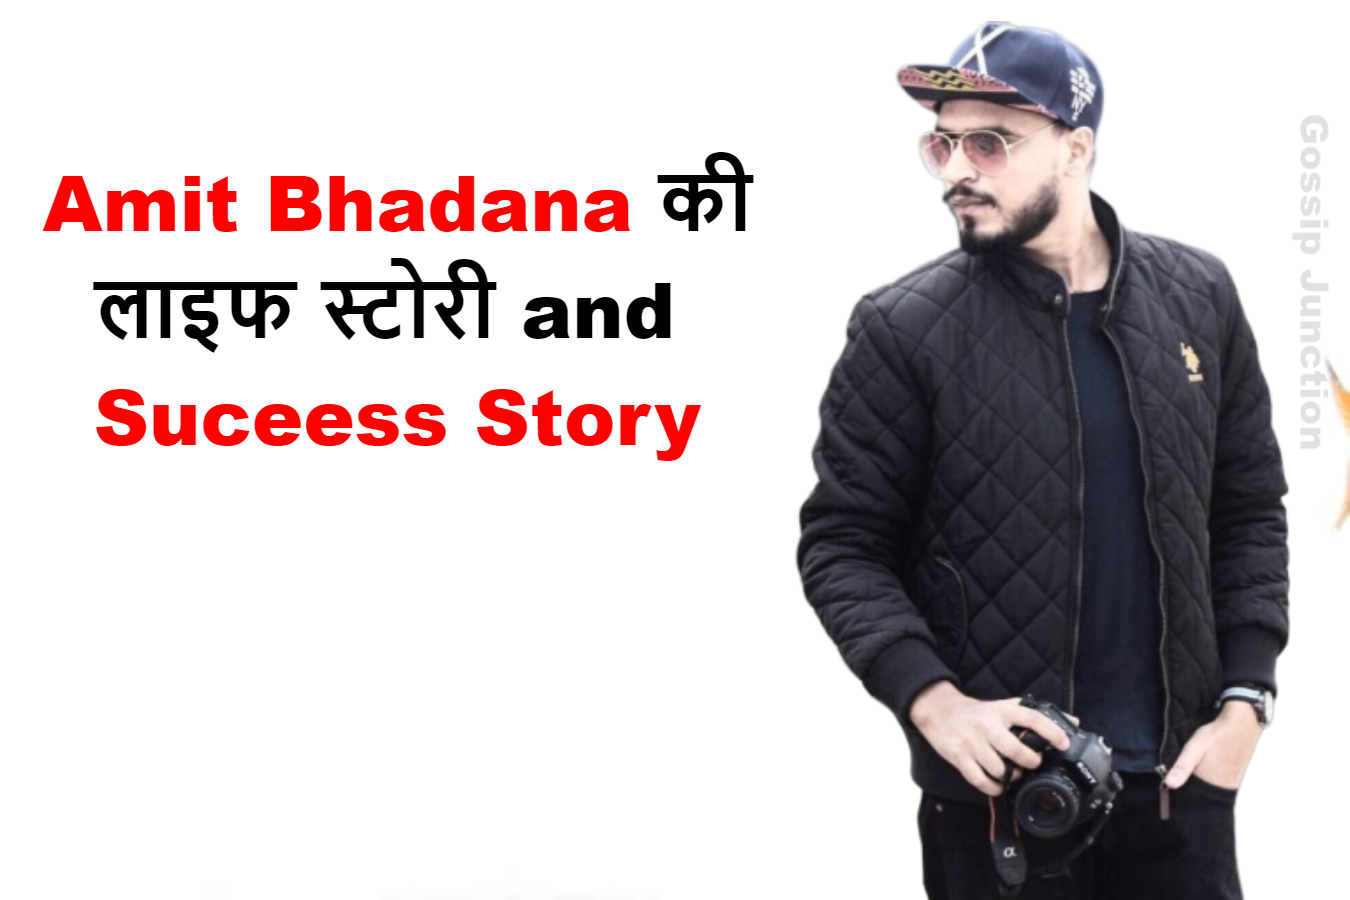 Amit Bhadana Life Story and Success Story